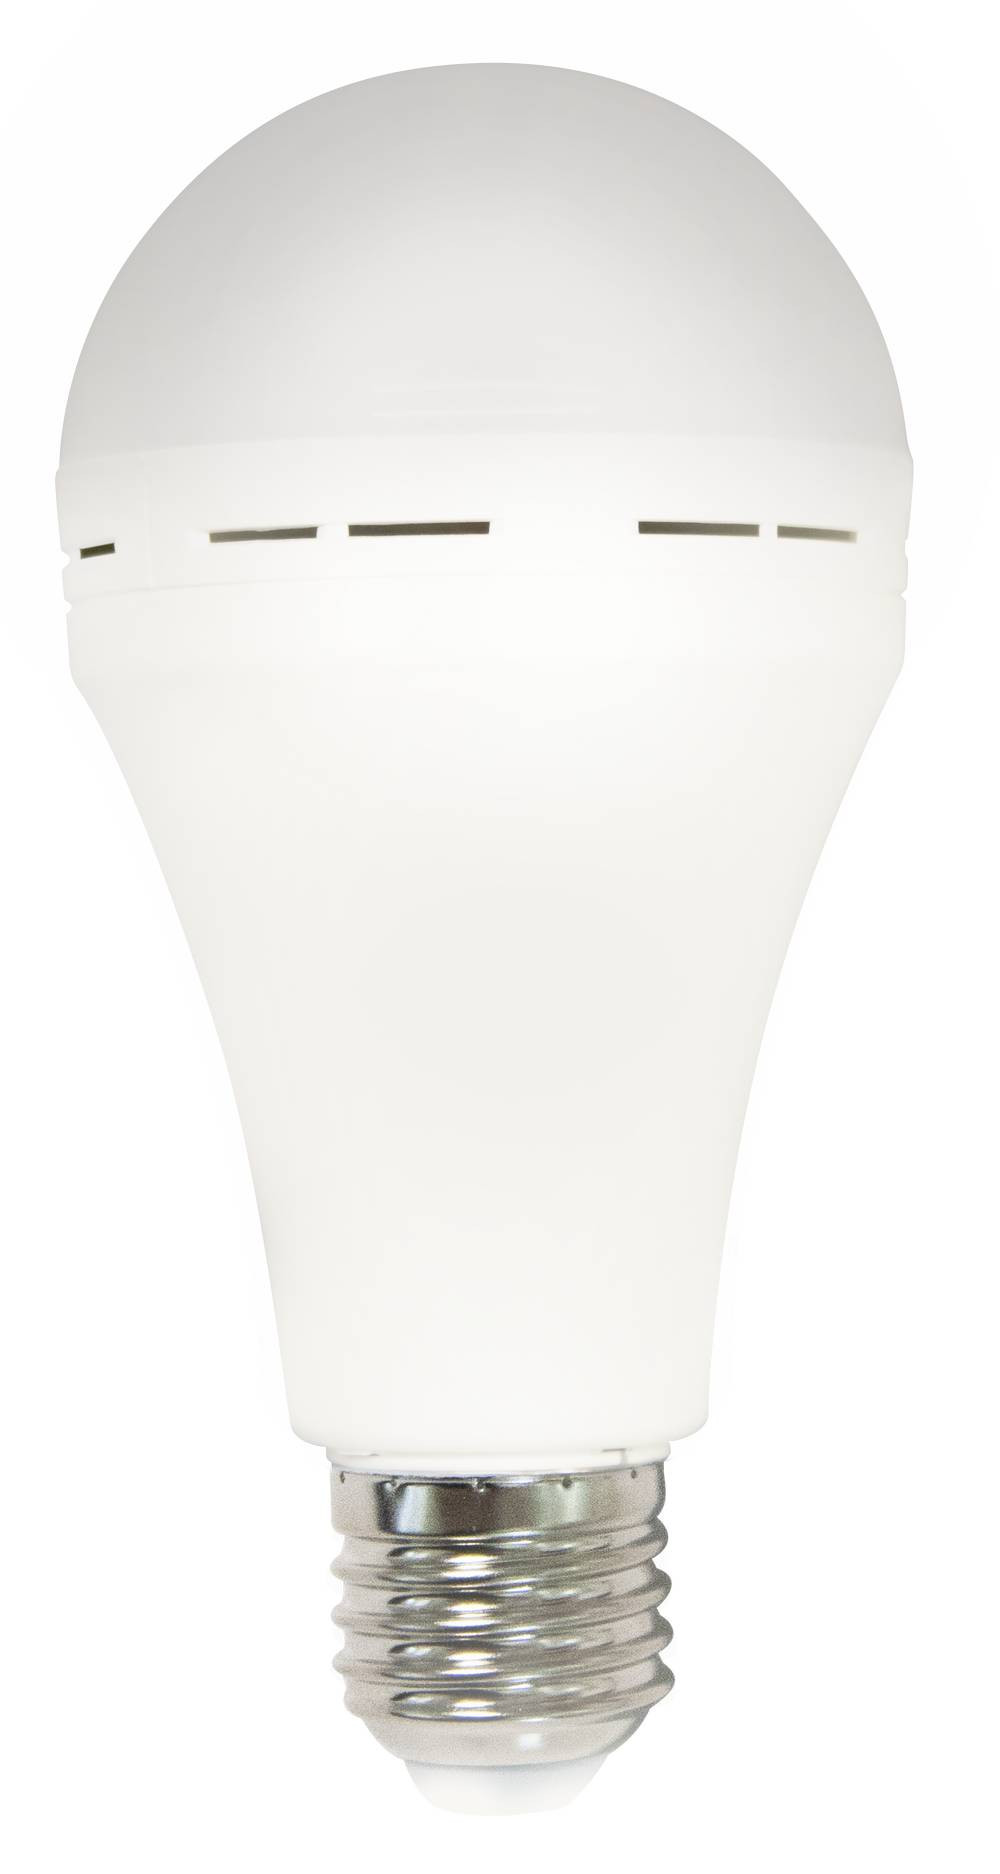 Ampoule anti-coupure LED-SMD A75 - 7W - 120° - 4 000K - 300Lm - autonomie de 6 heures